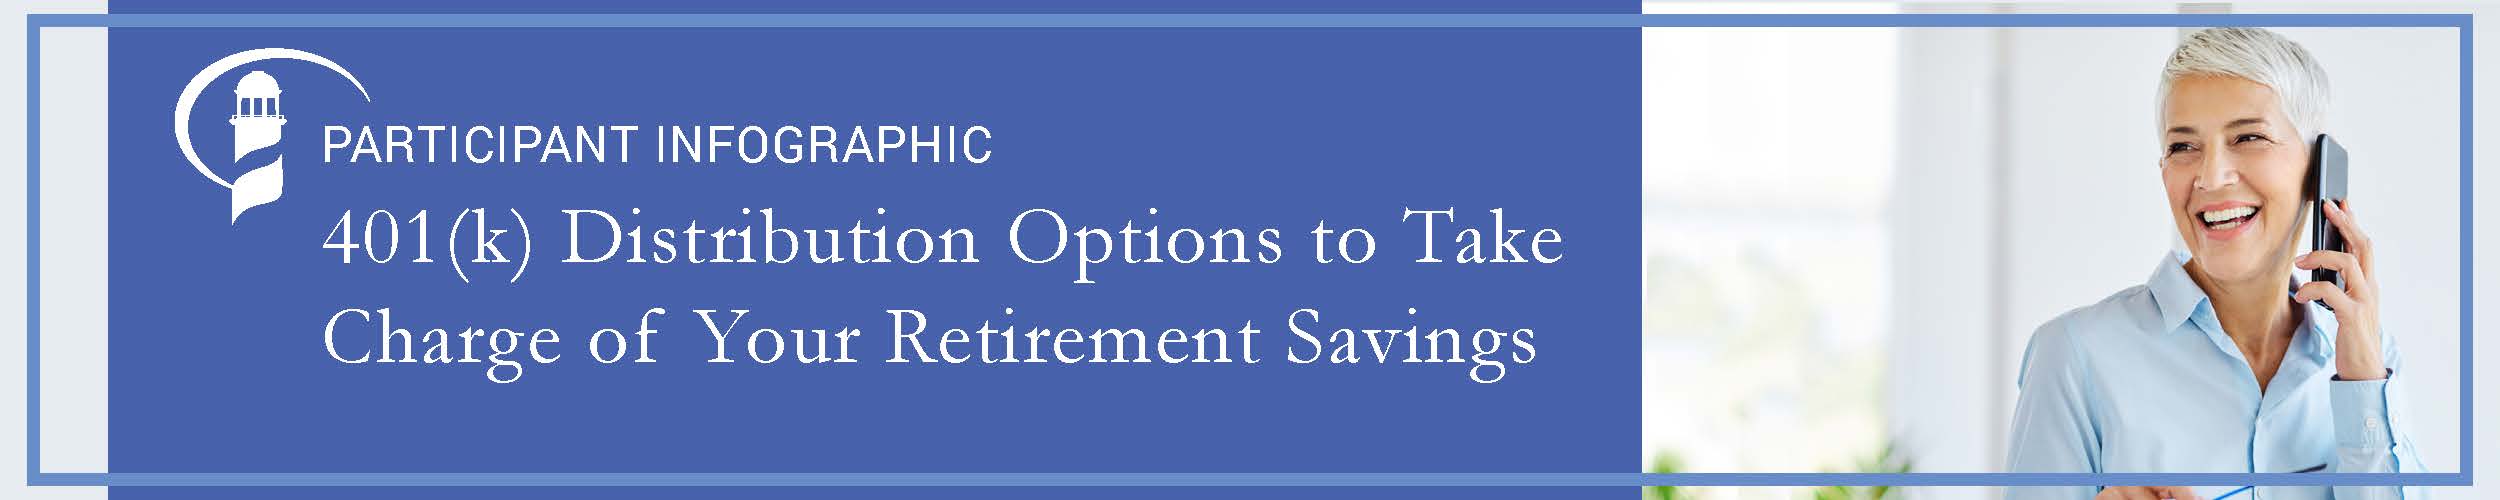 401(k) Distribution Options to Take Charge of Your Retirement Savings 